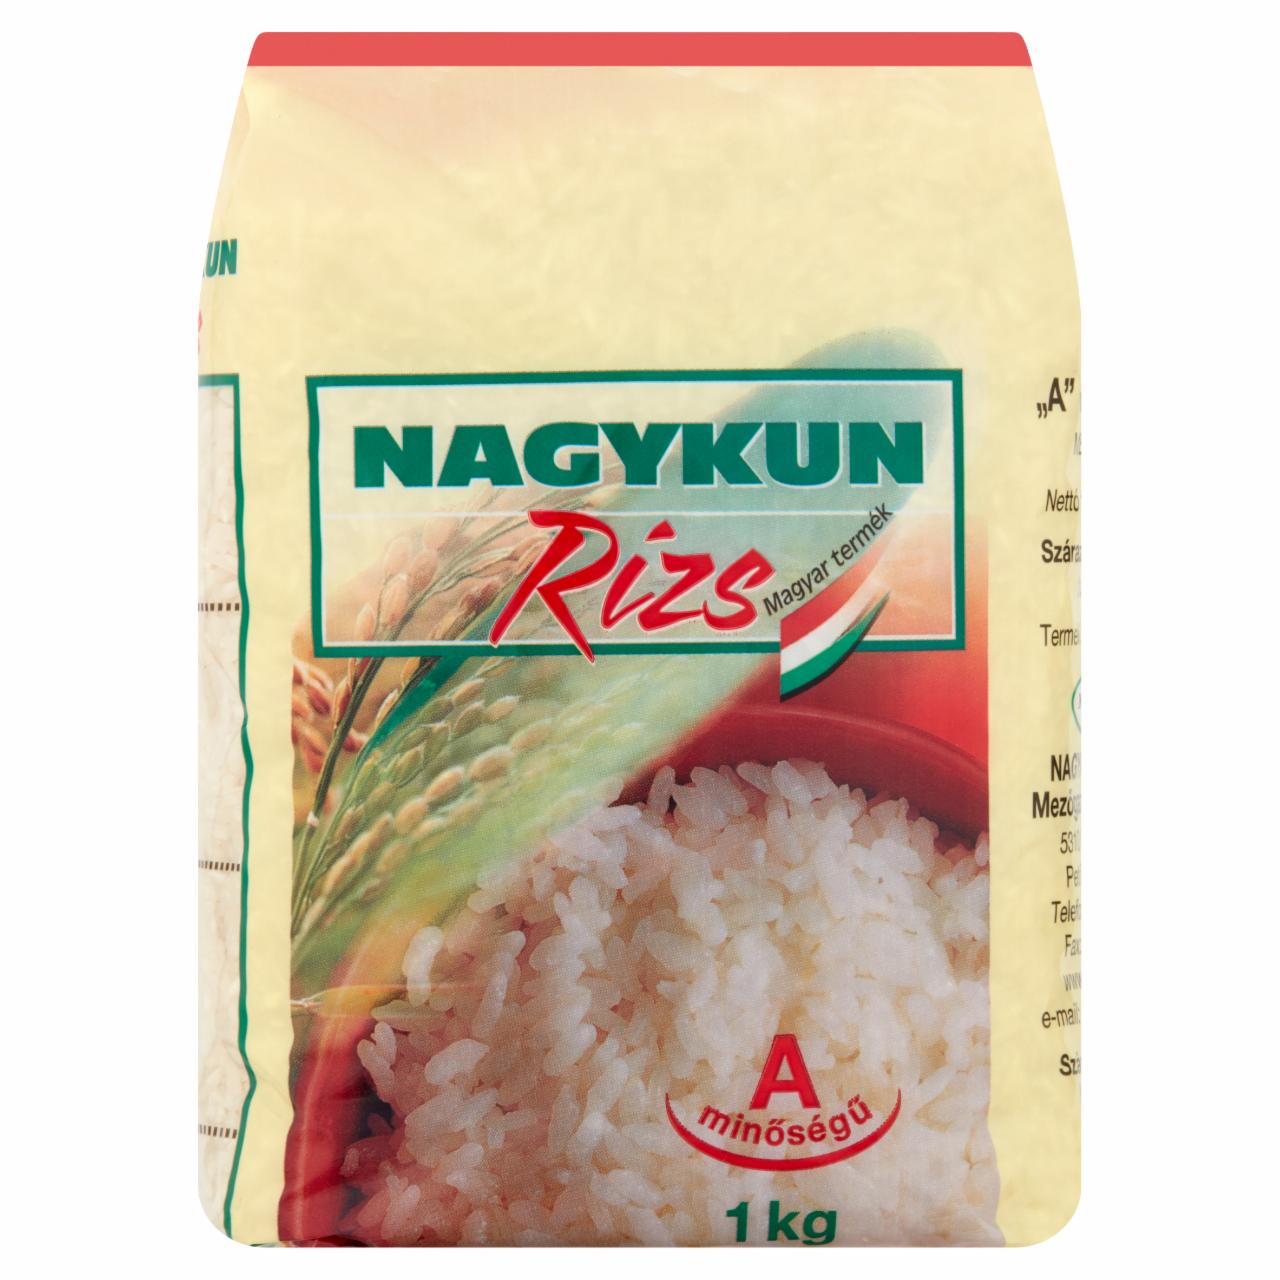 Képek - Nagykun „A' minőségű rizs 1 kg